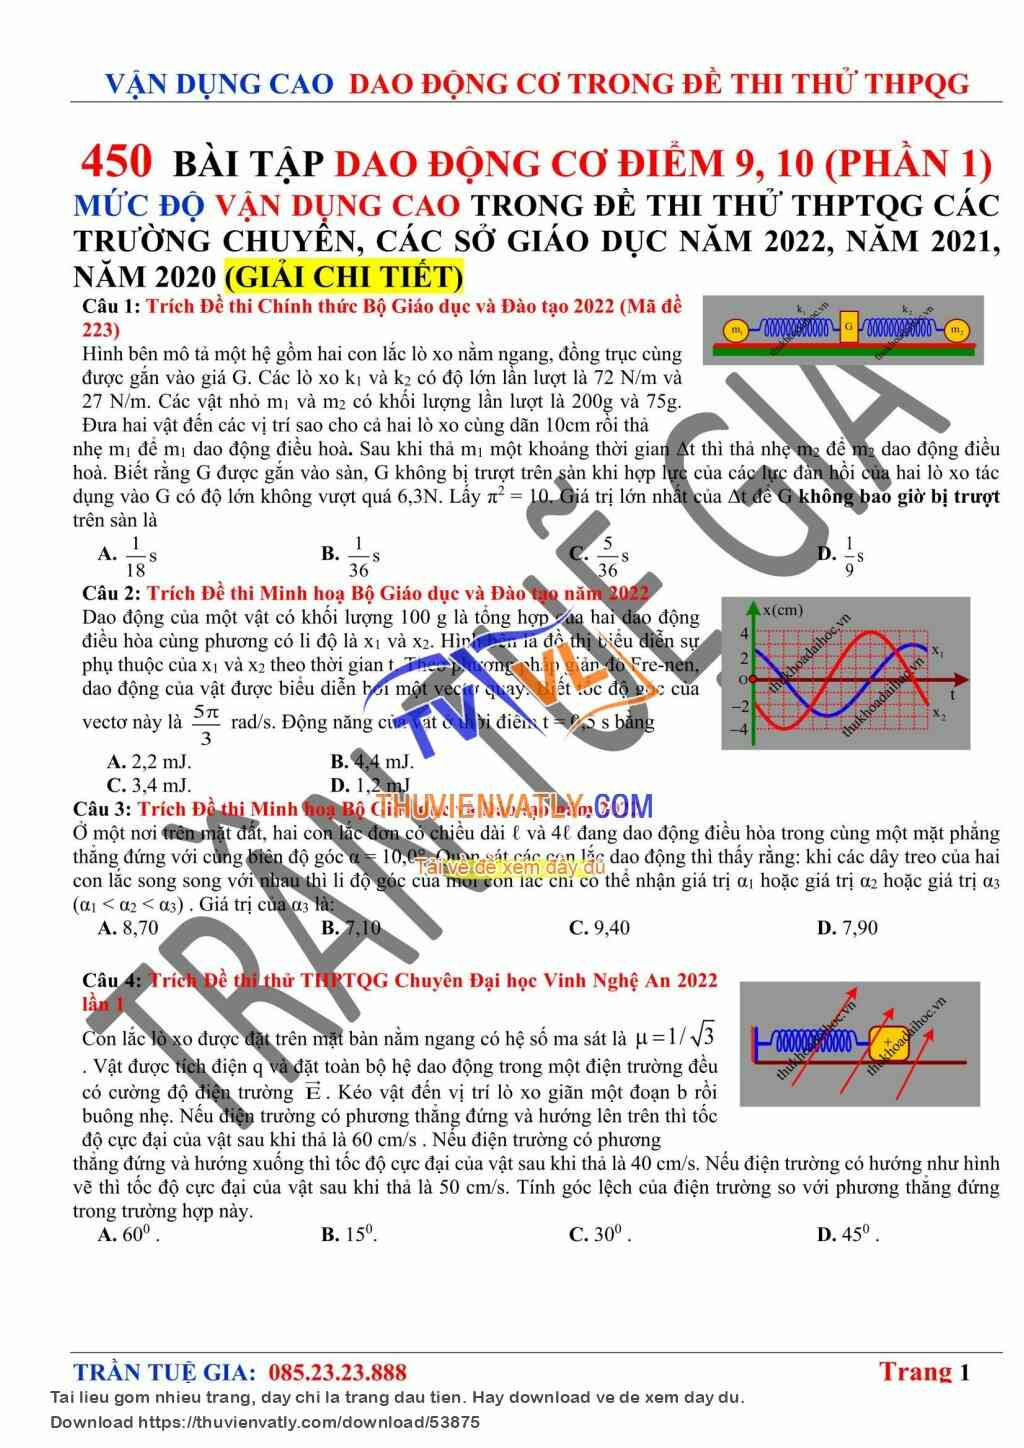 450 Bài tập VẬN DỤNG CAO Dao Động Cơ Trong Đề thi thử THPTQG 2022 Phần 1 